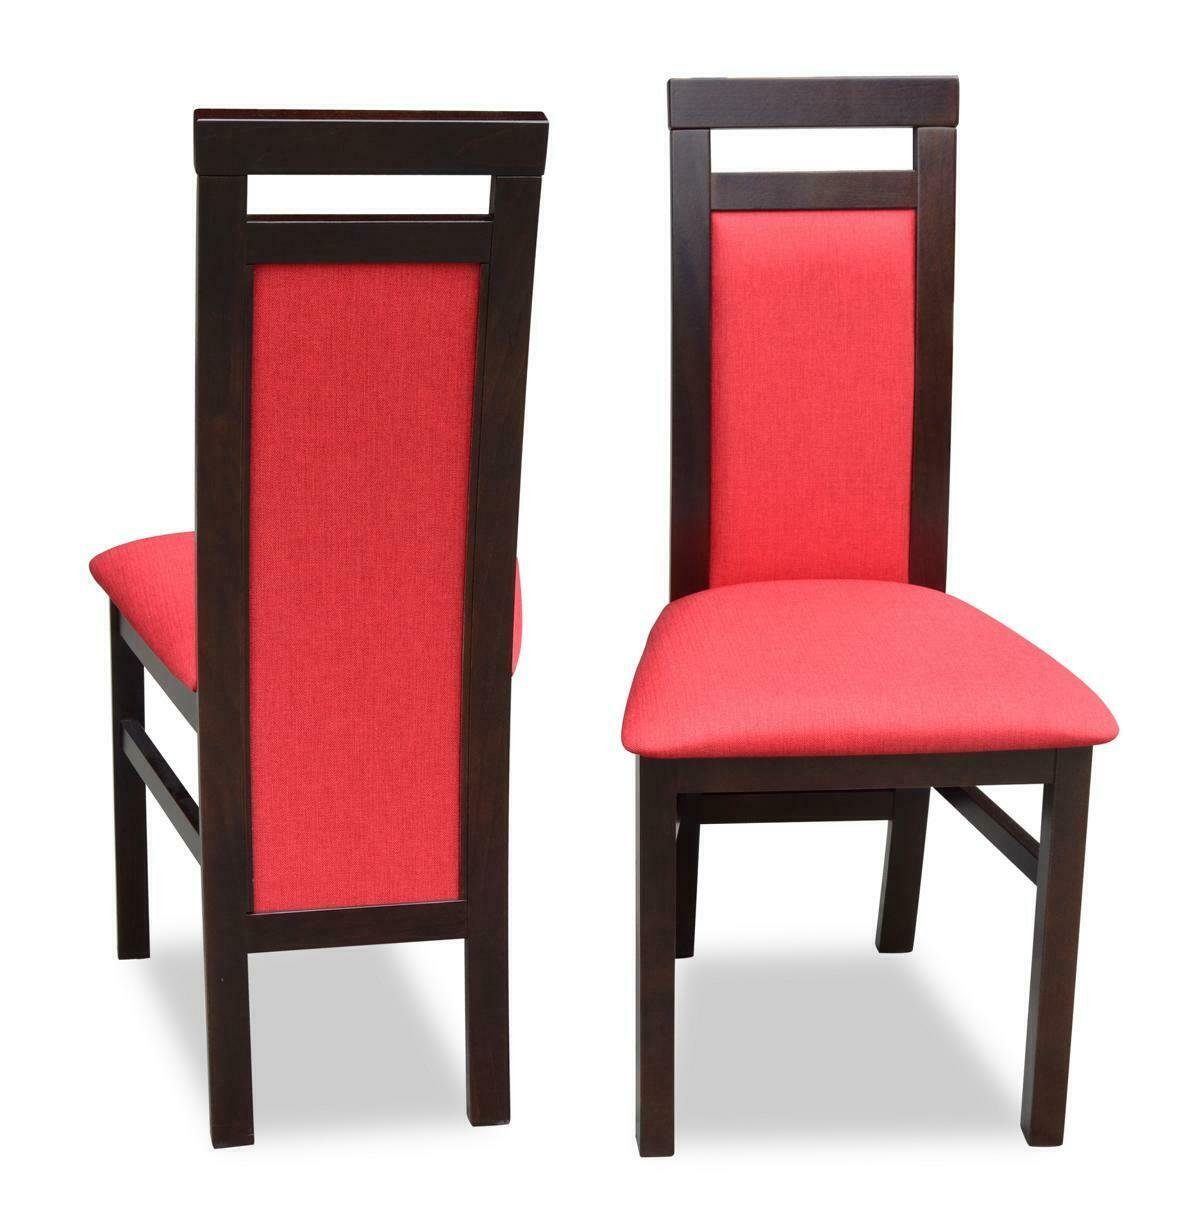 Gruppe 8x Stuhl Stuhl, Garnitur Garnitur Holz Textil JVmoebel Set Sessel Stühle Set Esszimmer